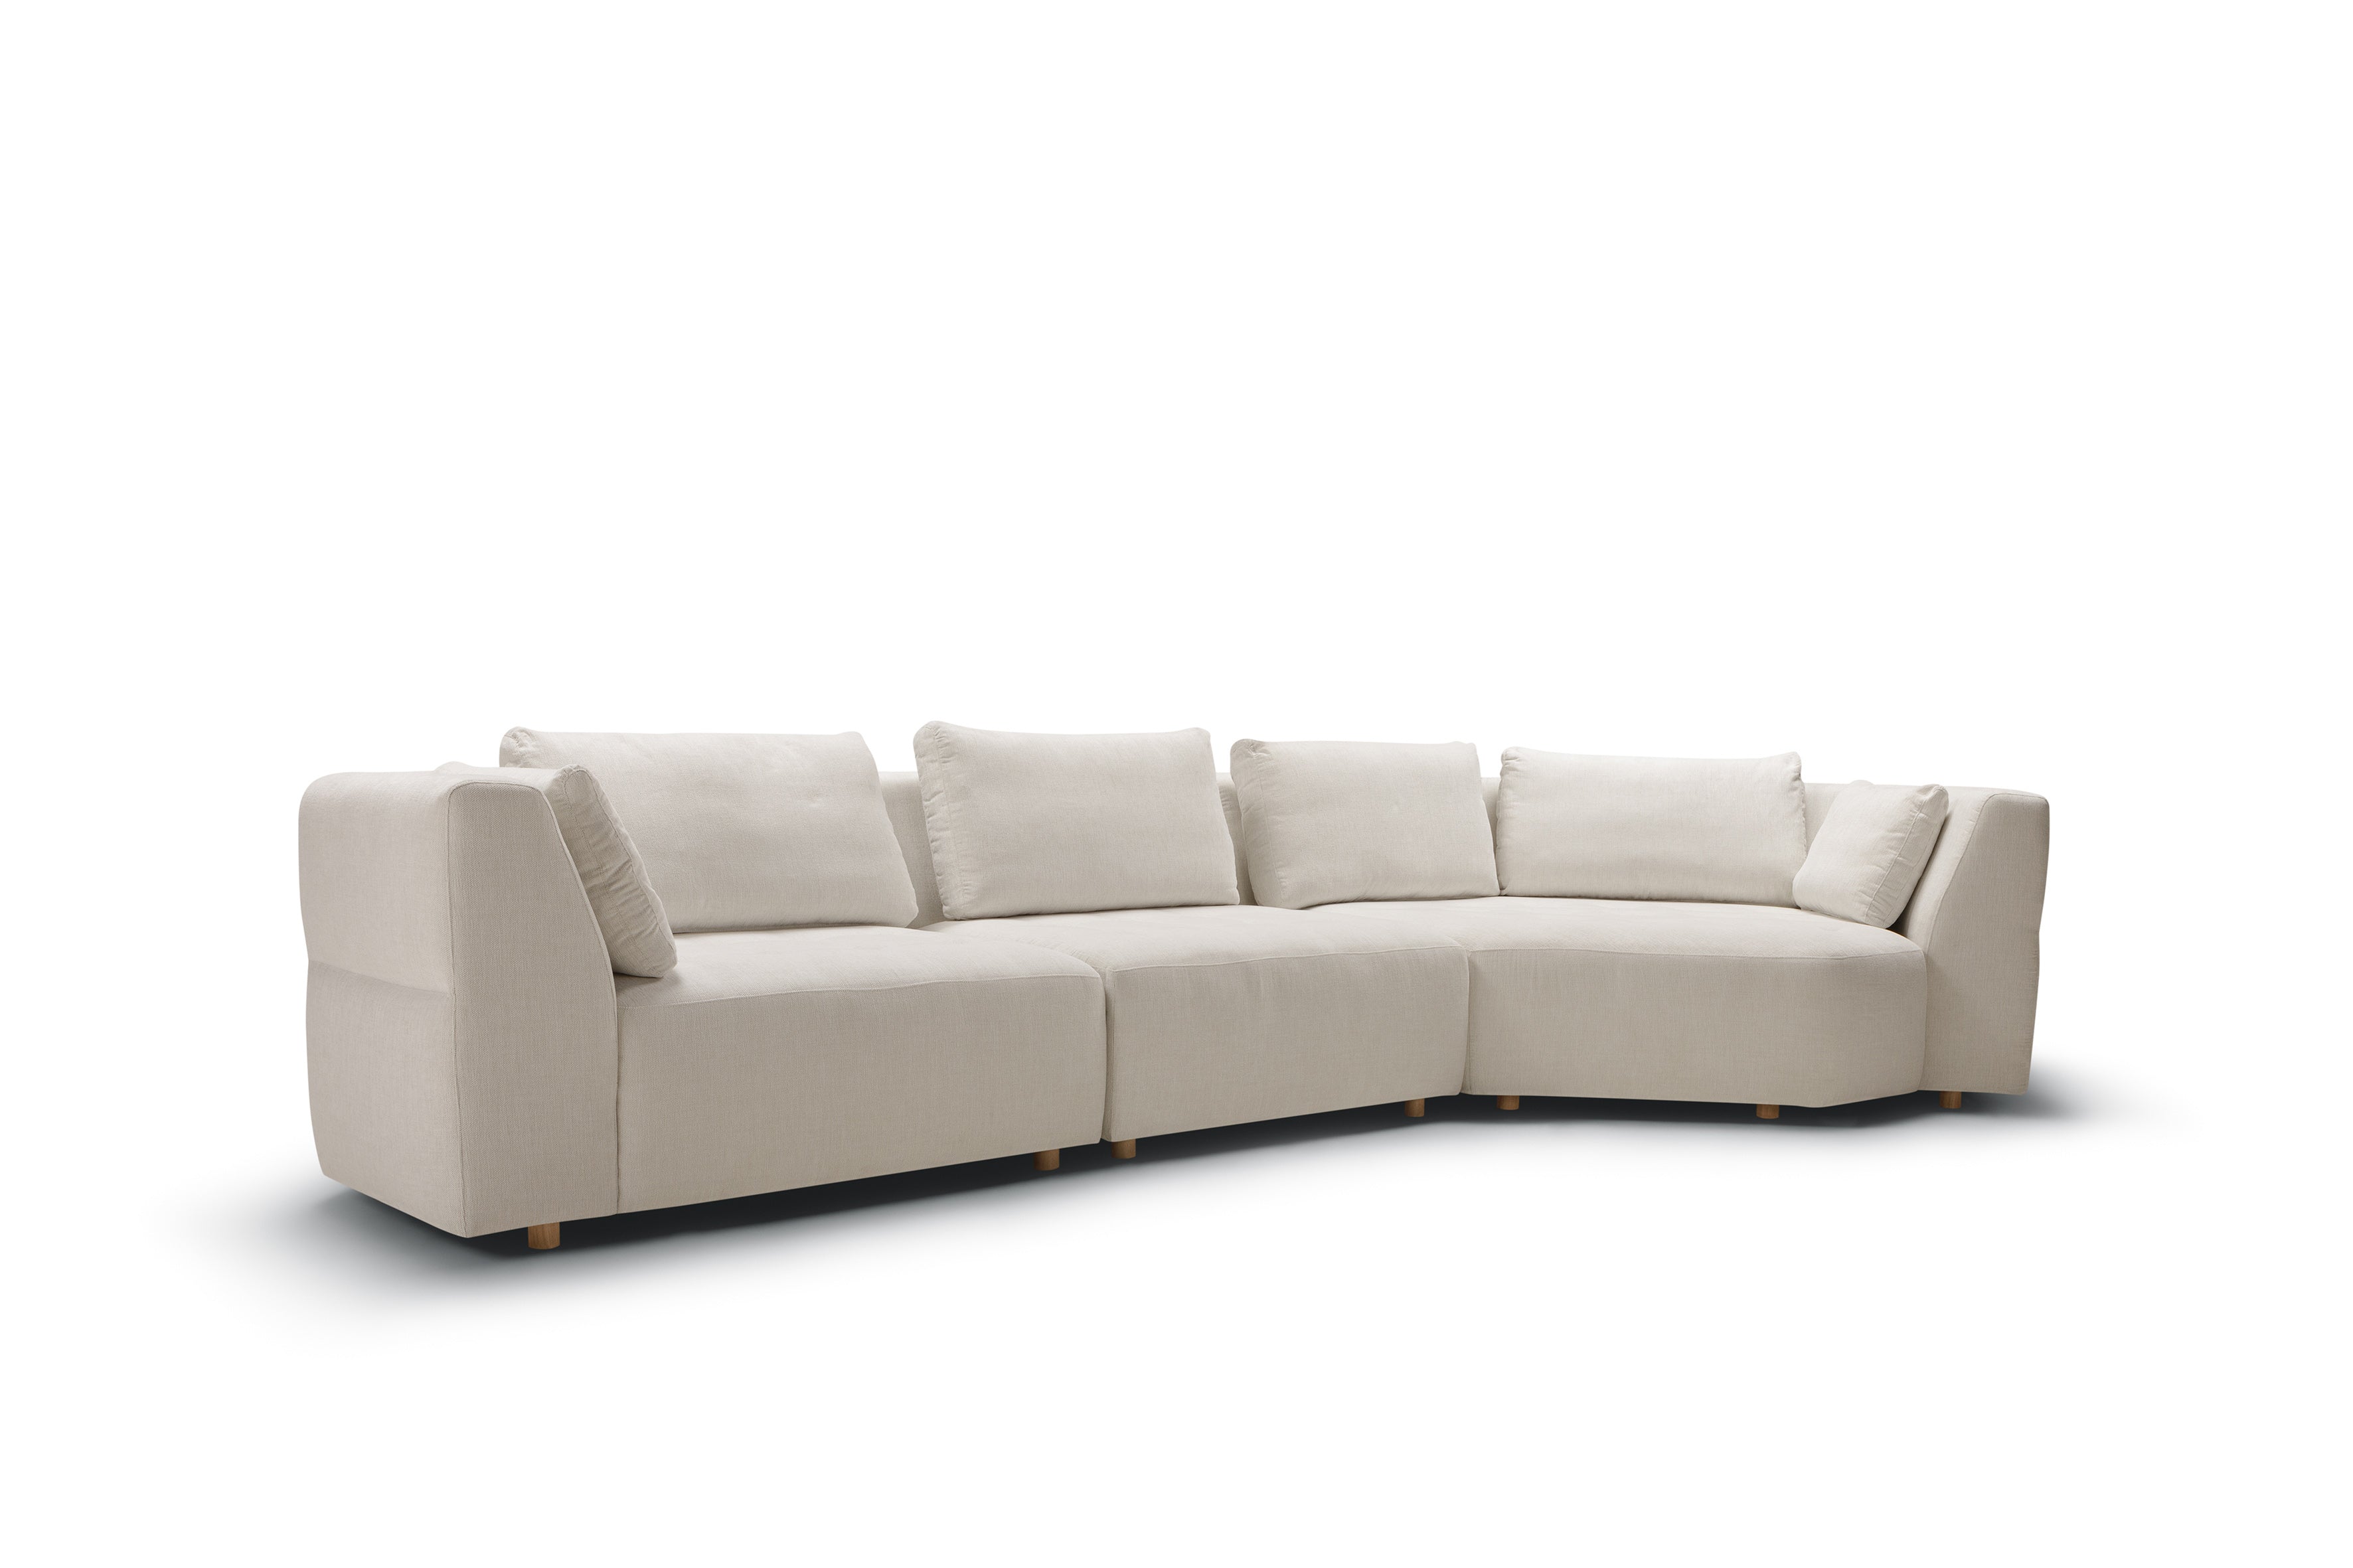 Mastrella Codi Set 2 Corner Sofa Right